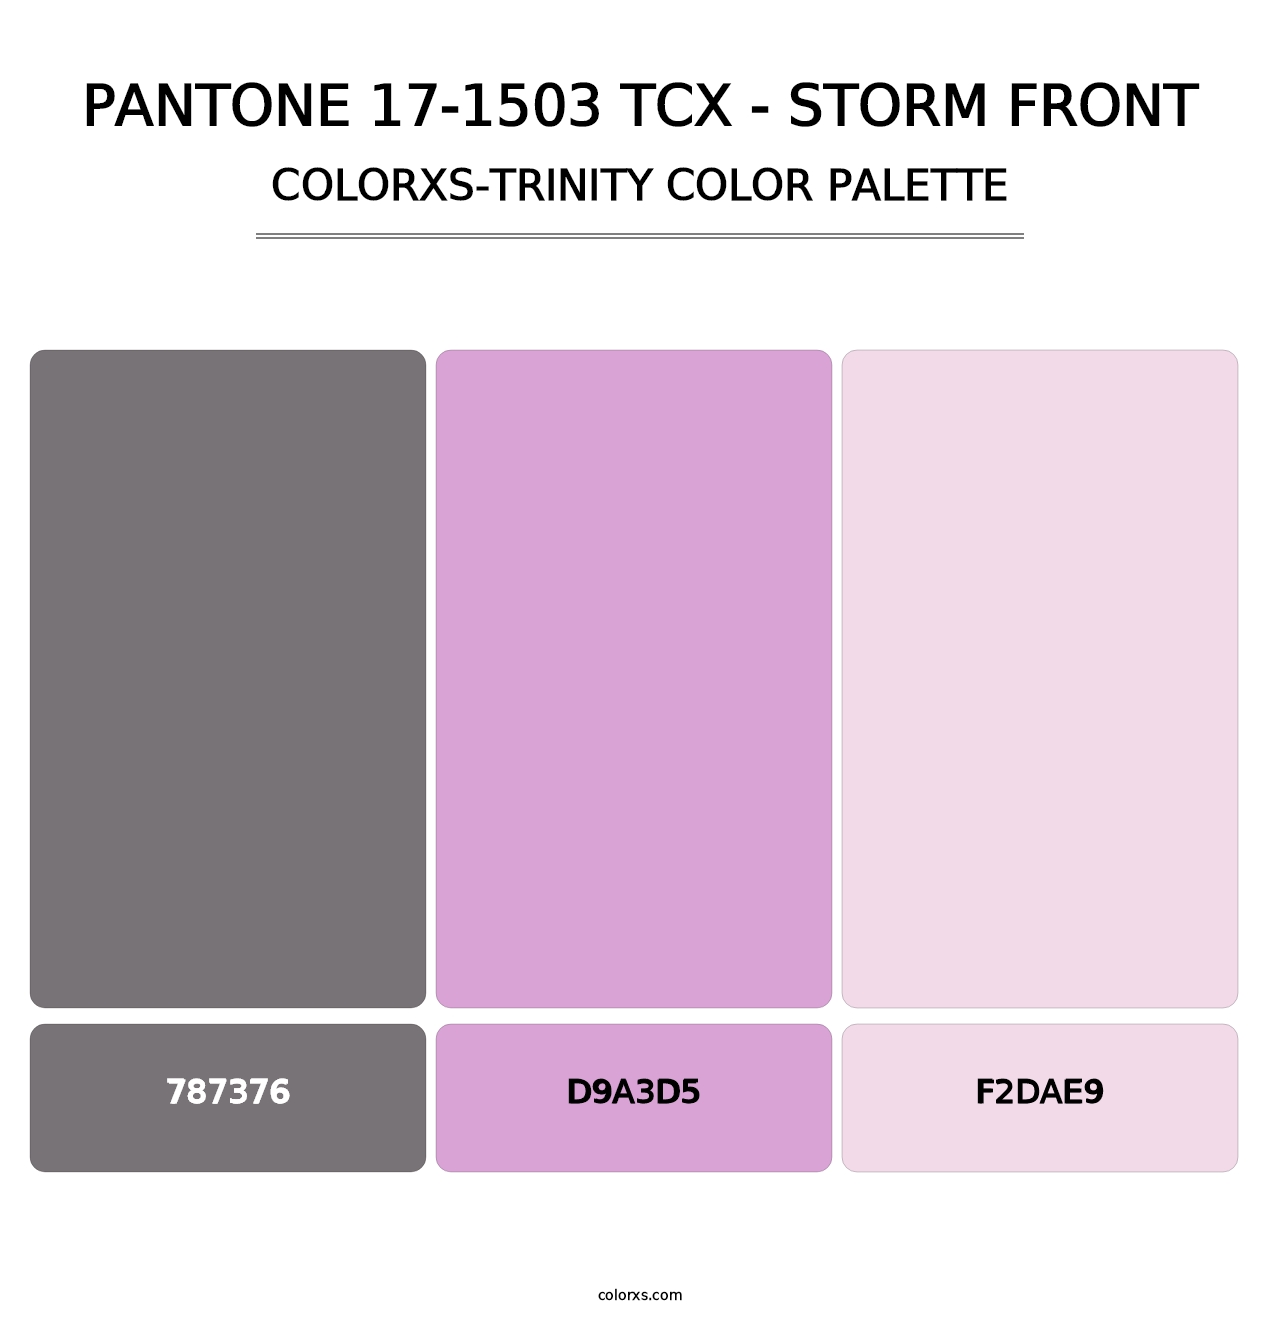 PANTONE 17-1503 TCX - Storm Front - Colorxs Trinity Palette